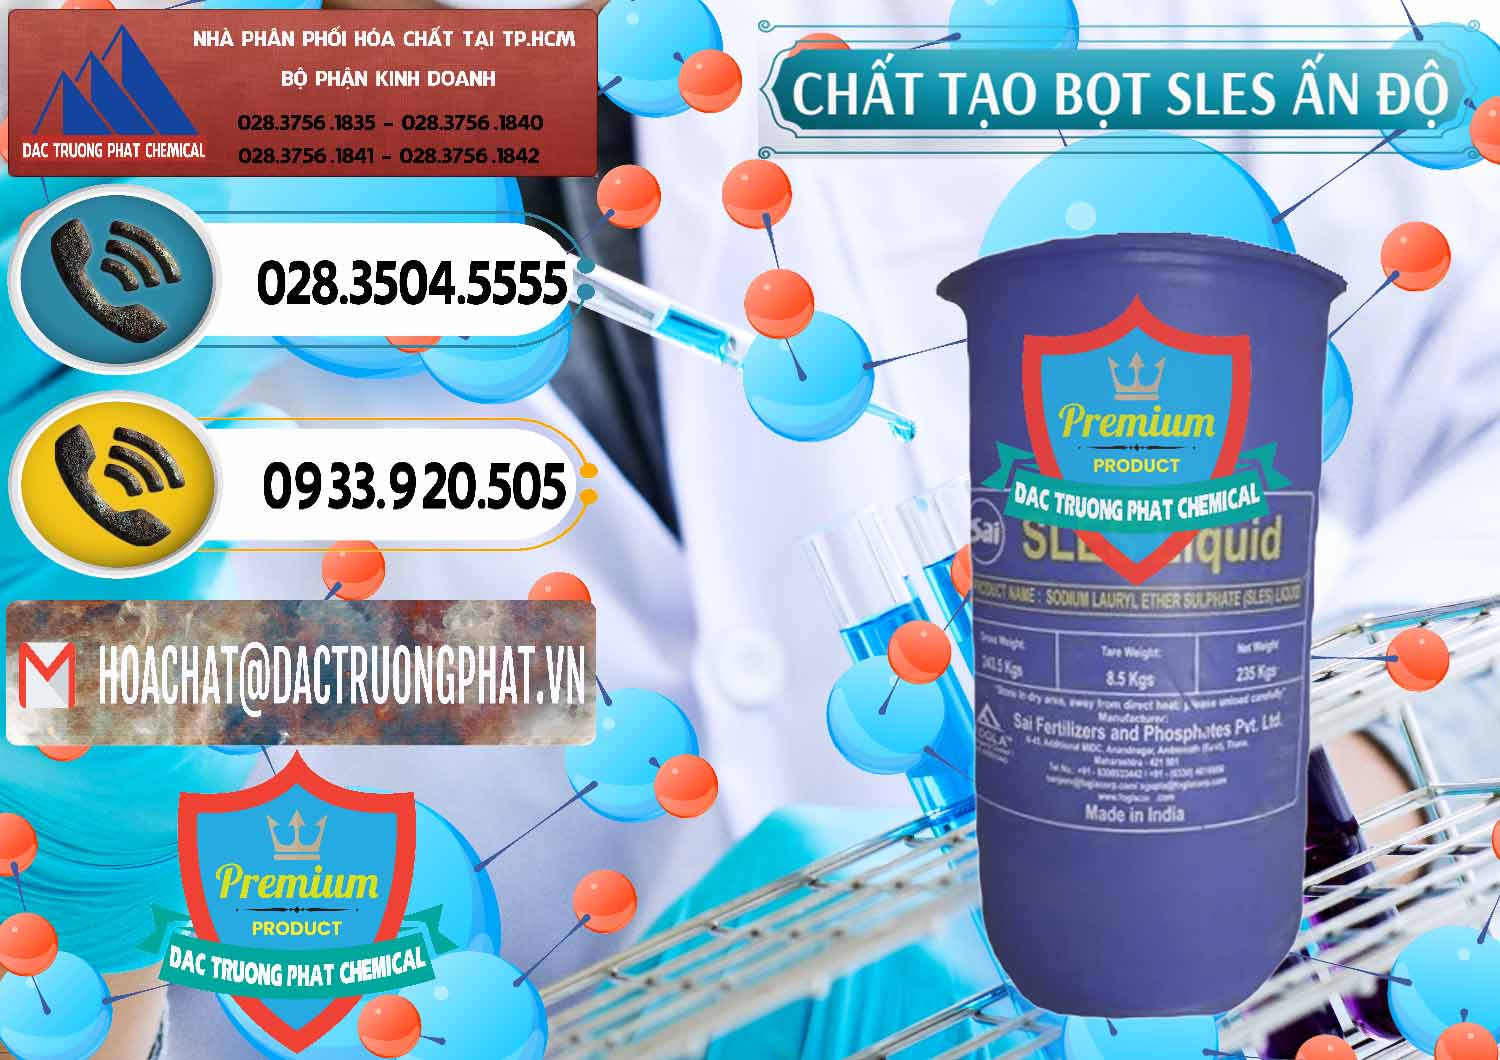 Công ty bán - cung ứng Chất Tạo Bọt Sles - Sodium Lauryl Ether Sulphate Ấn Độ India - 0333 - Cung cấp & kinh doanh hóa chất tại TP.HCM - hoachatdetnhuom.vn